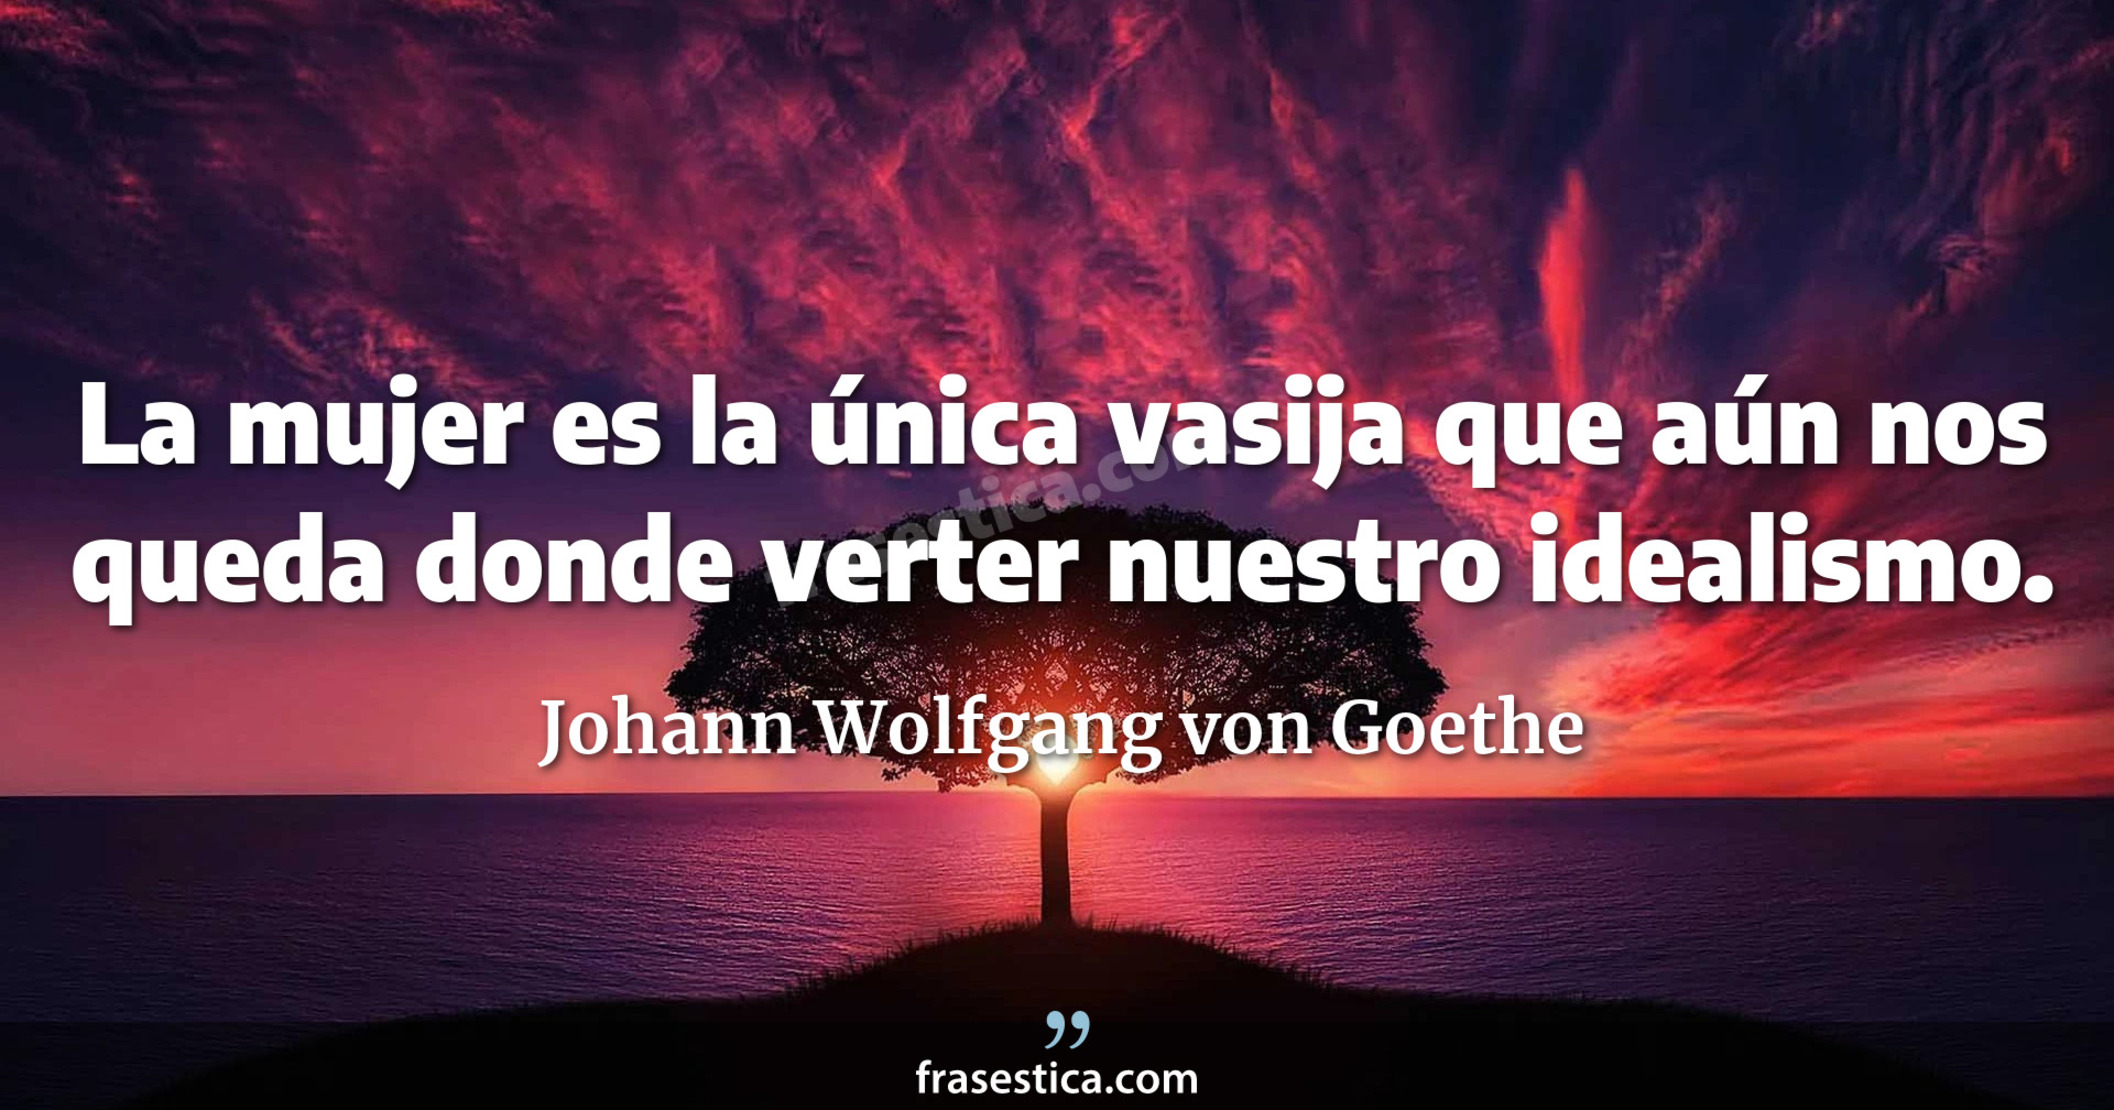 La mujer es la única vasija que aún nos queda donde verter nuestro idealismo. - Johann Wolfgang von Goethe